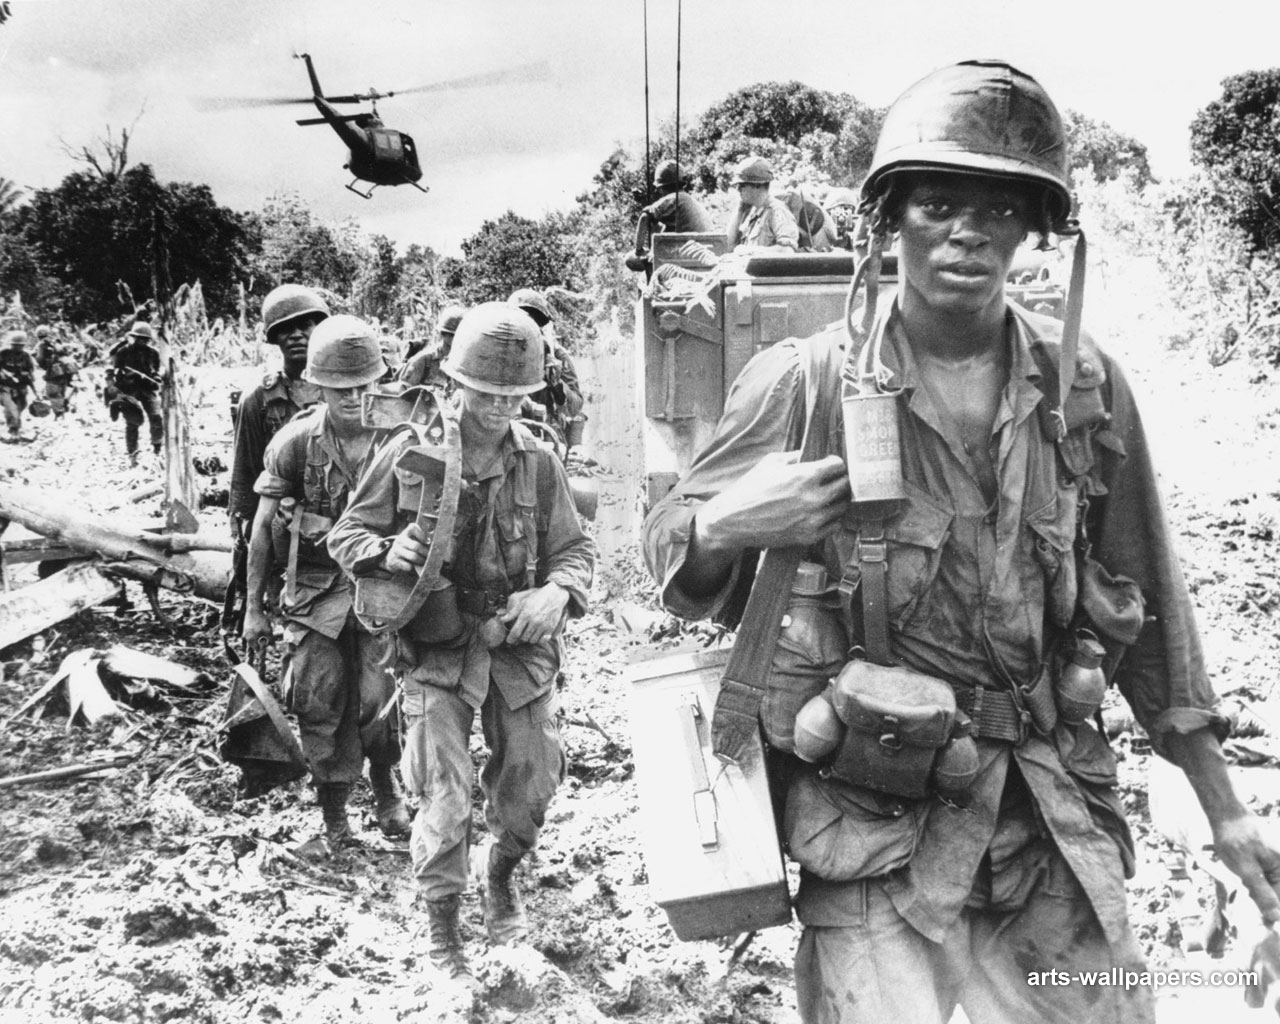 Ho Chi Minh Trail - Vietnam War